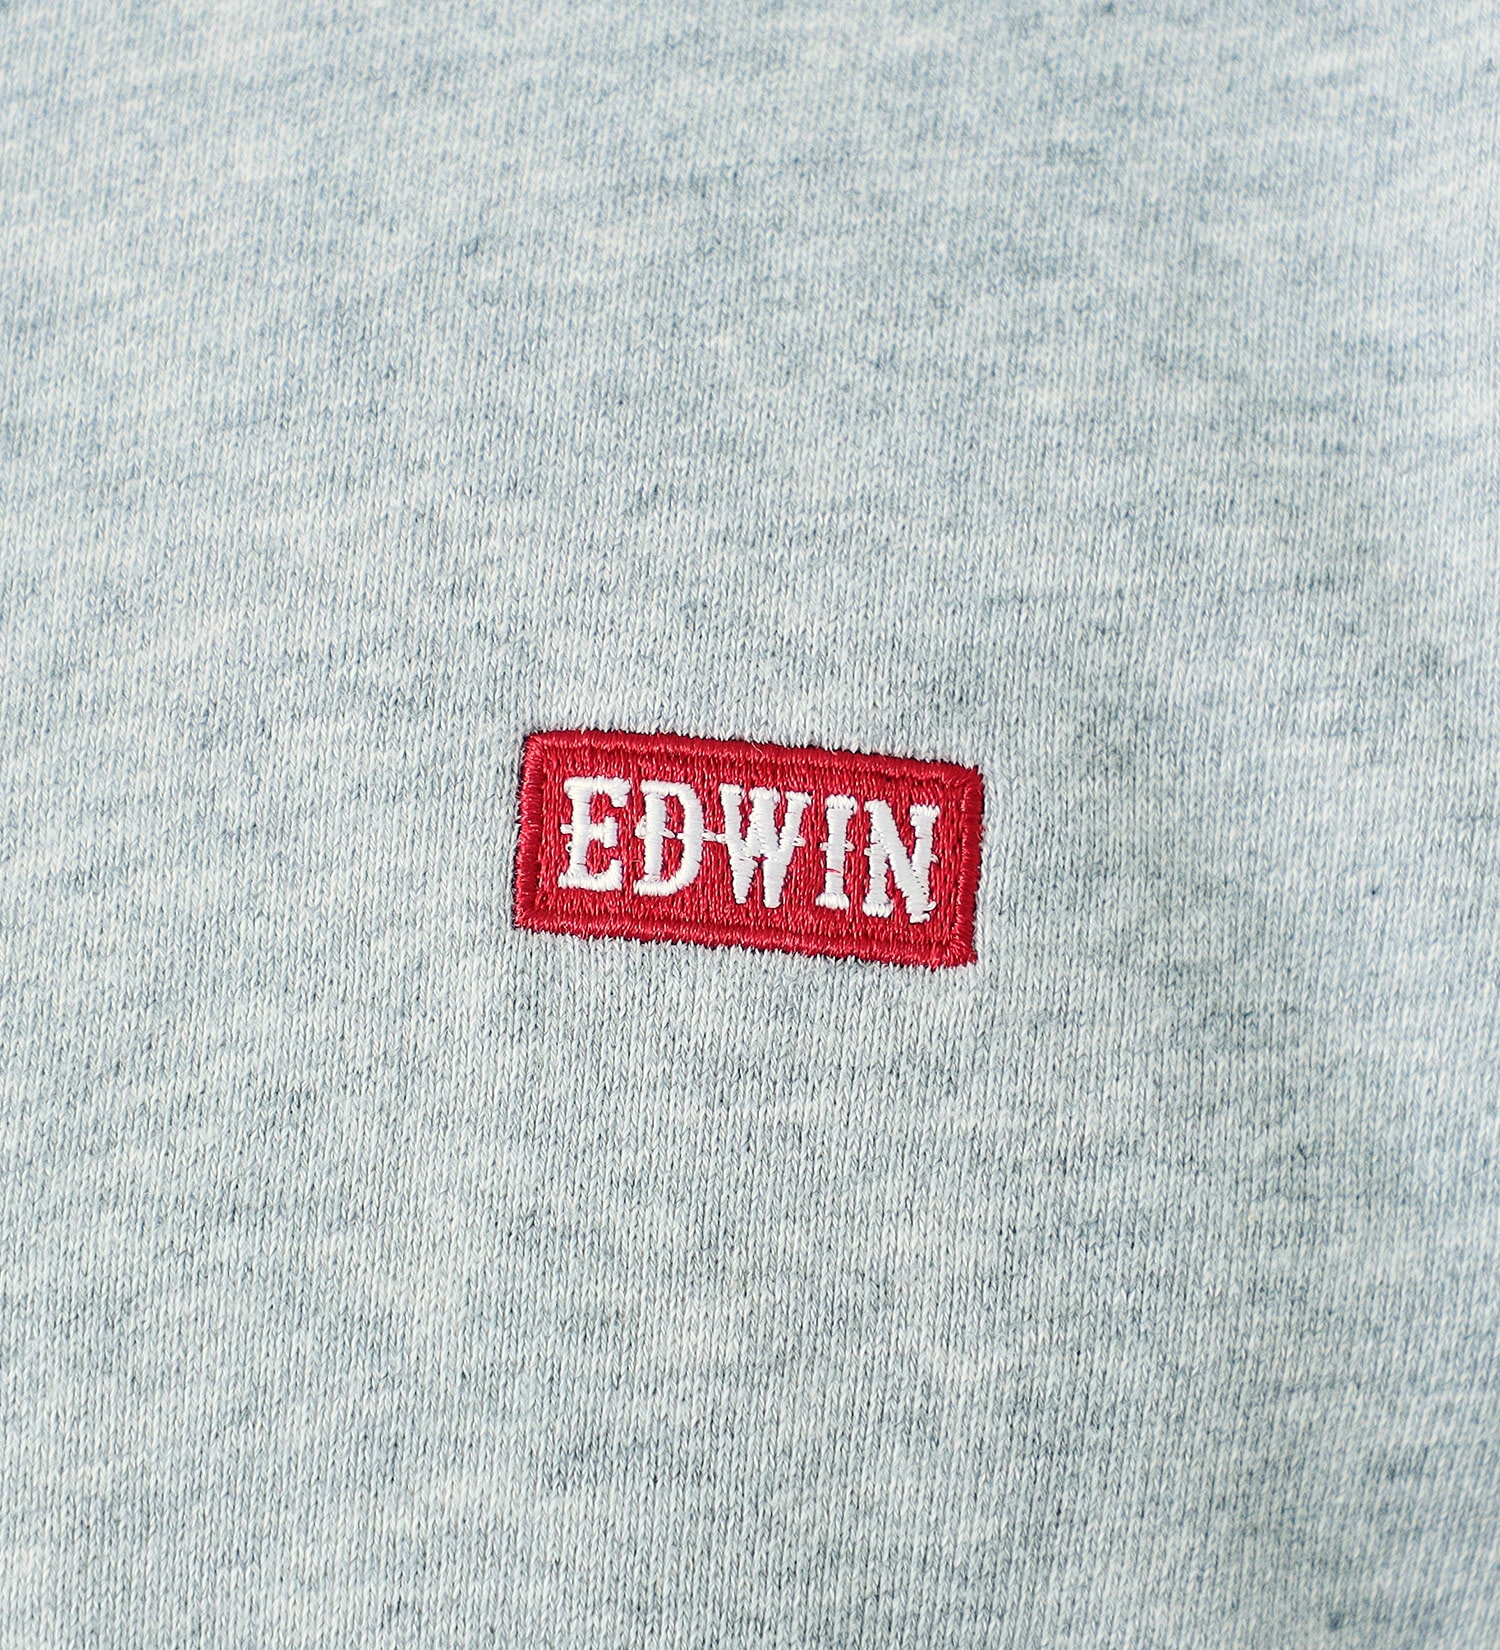 EDWIN(エドウイン)のボックスロゴ刺繍スウェット 長袖|トップス/スウェット/メンズ|グレー